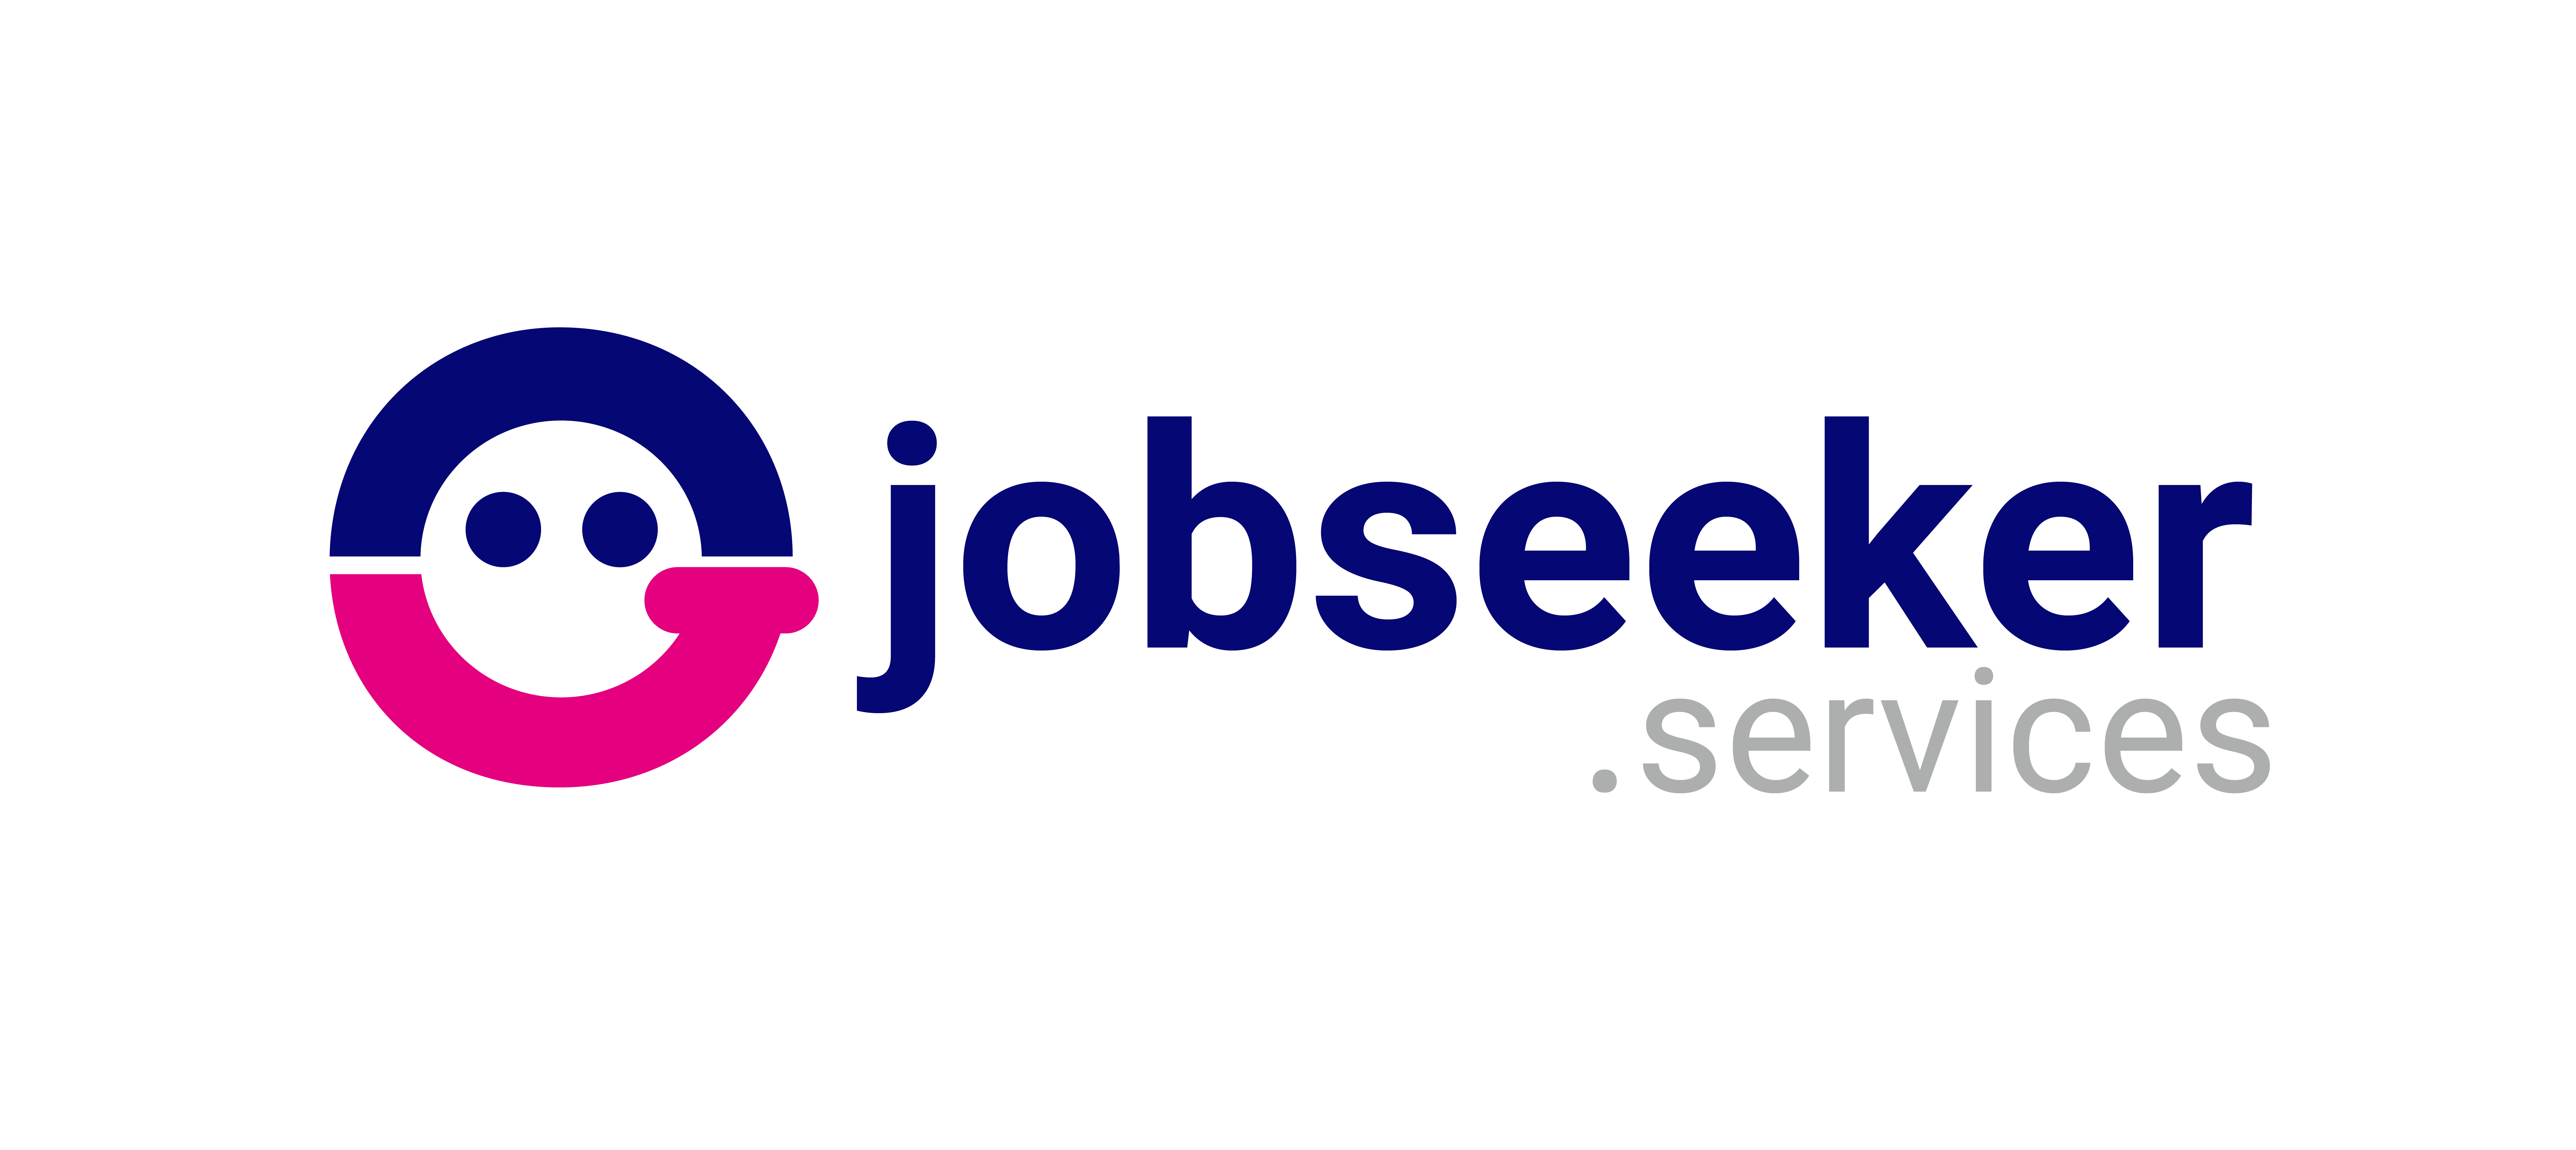 2022-11/jobseeker-services-logo-1667991616.png